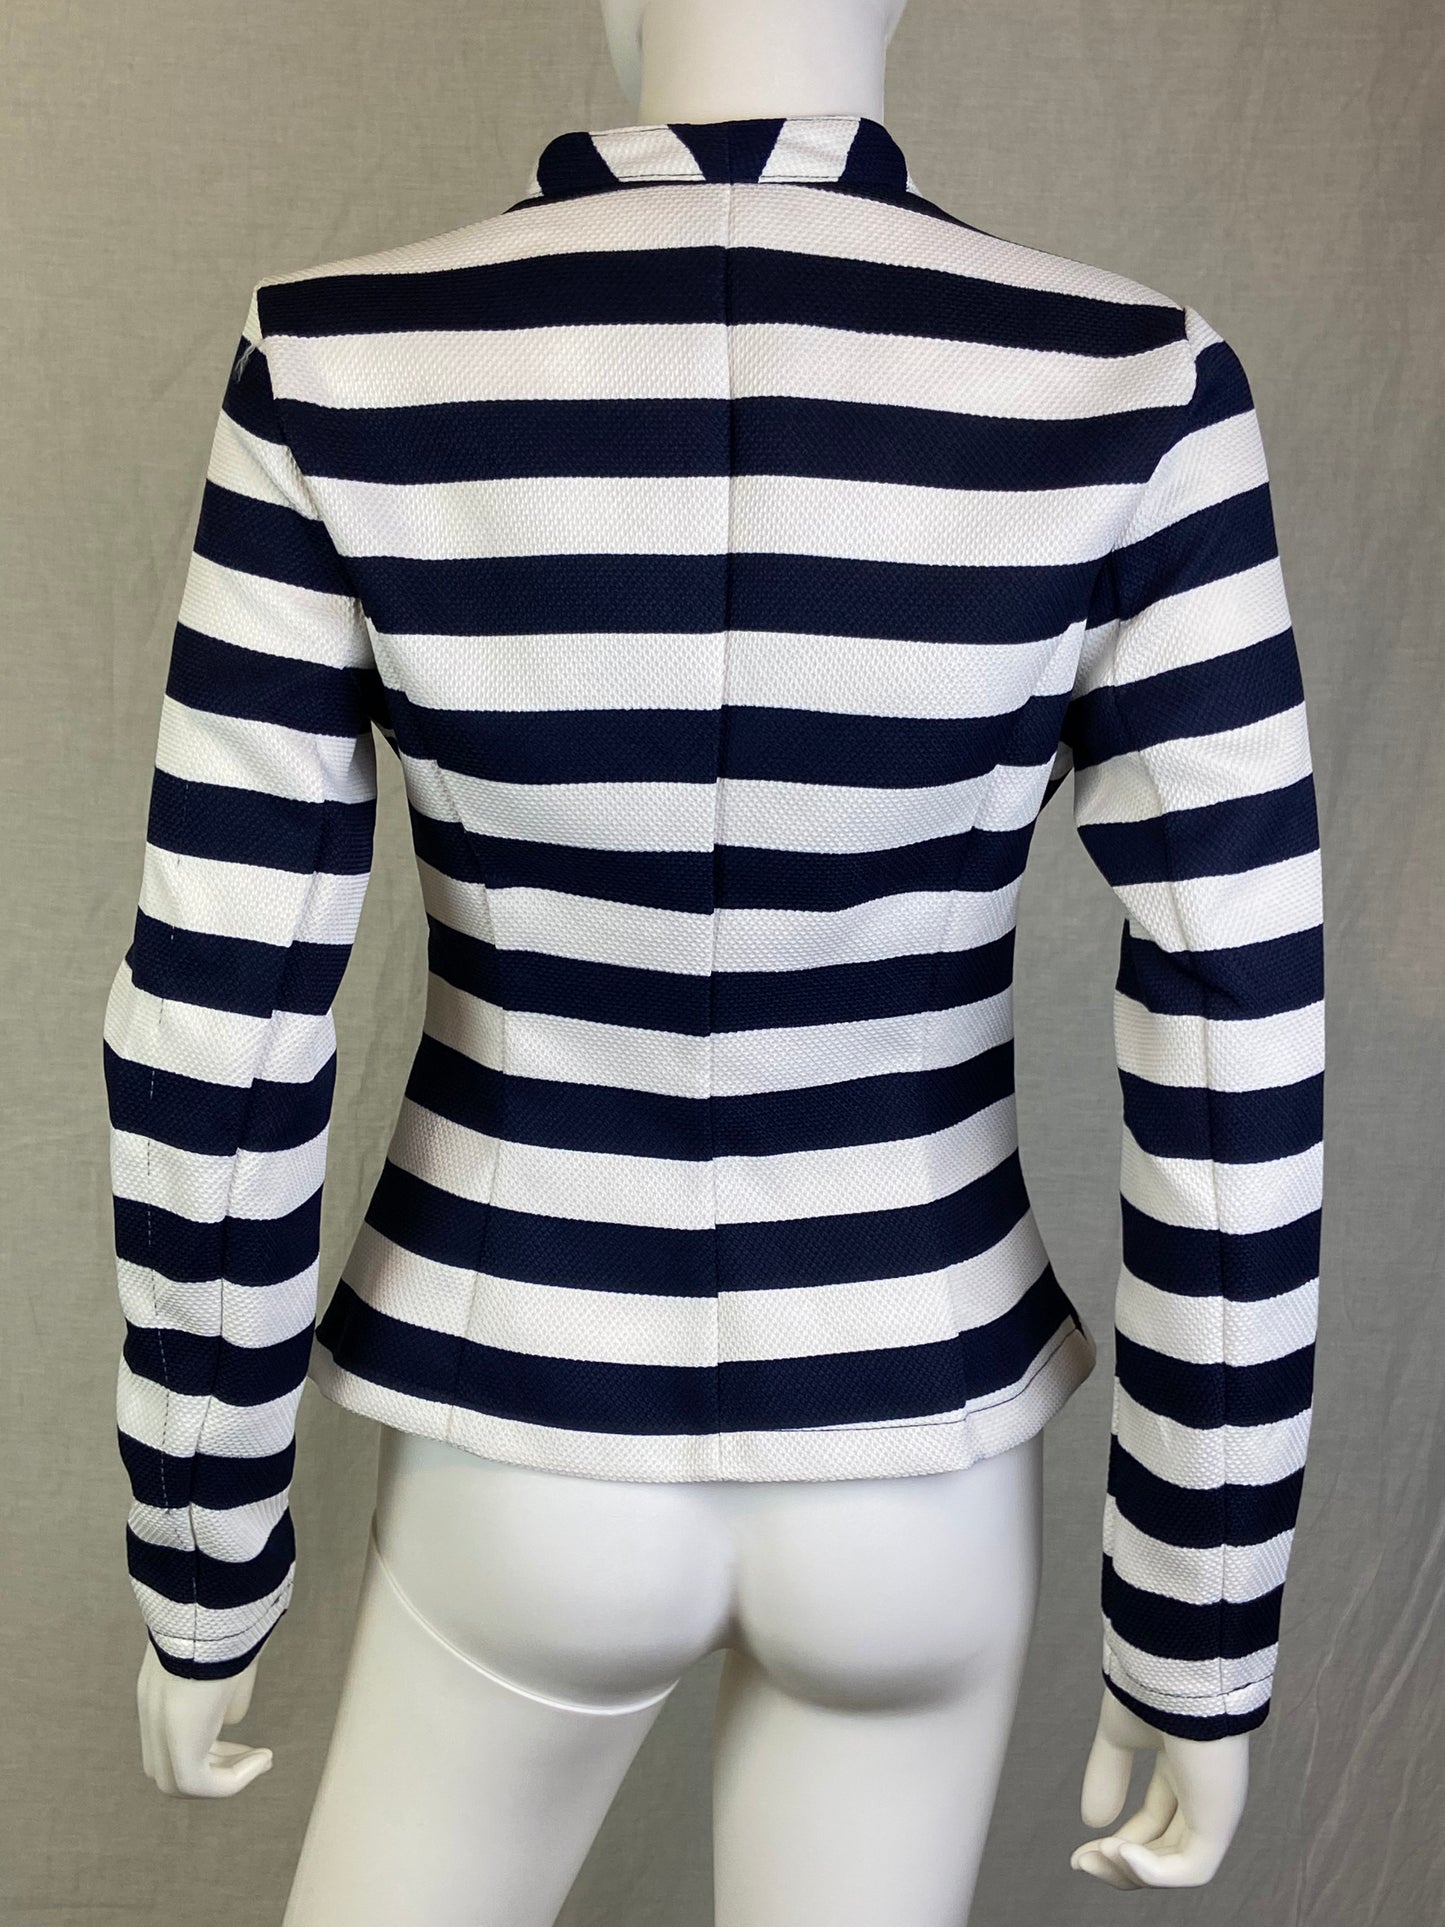 Venus White Navy Blue Black Striped Blazer